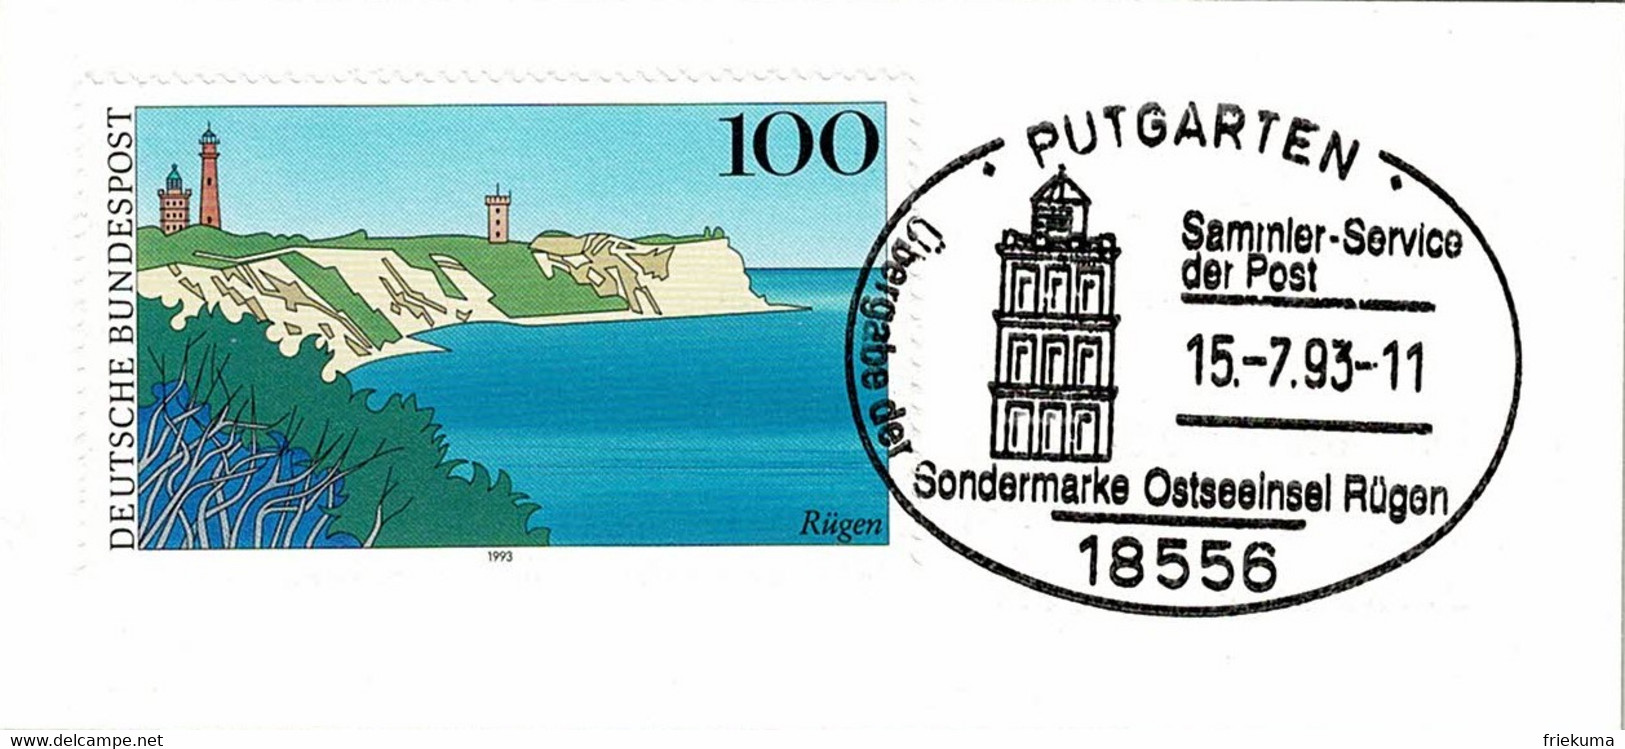 Deutsche Bundespost 1993, Sonderstempel Ostseeinsel Rügen Putgarten - Eilanden